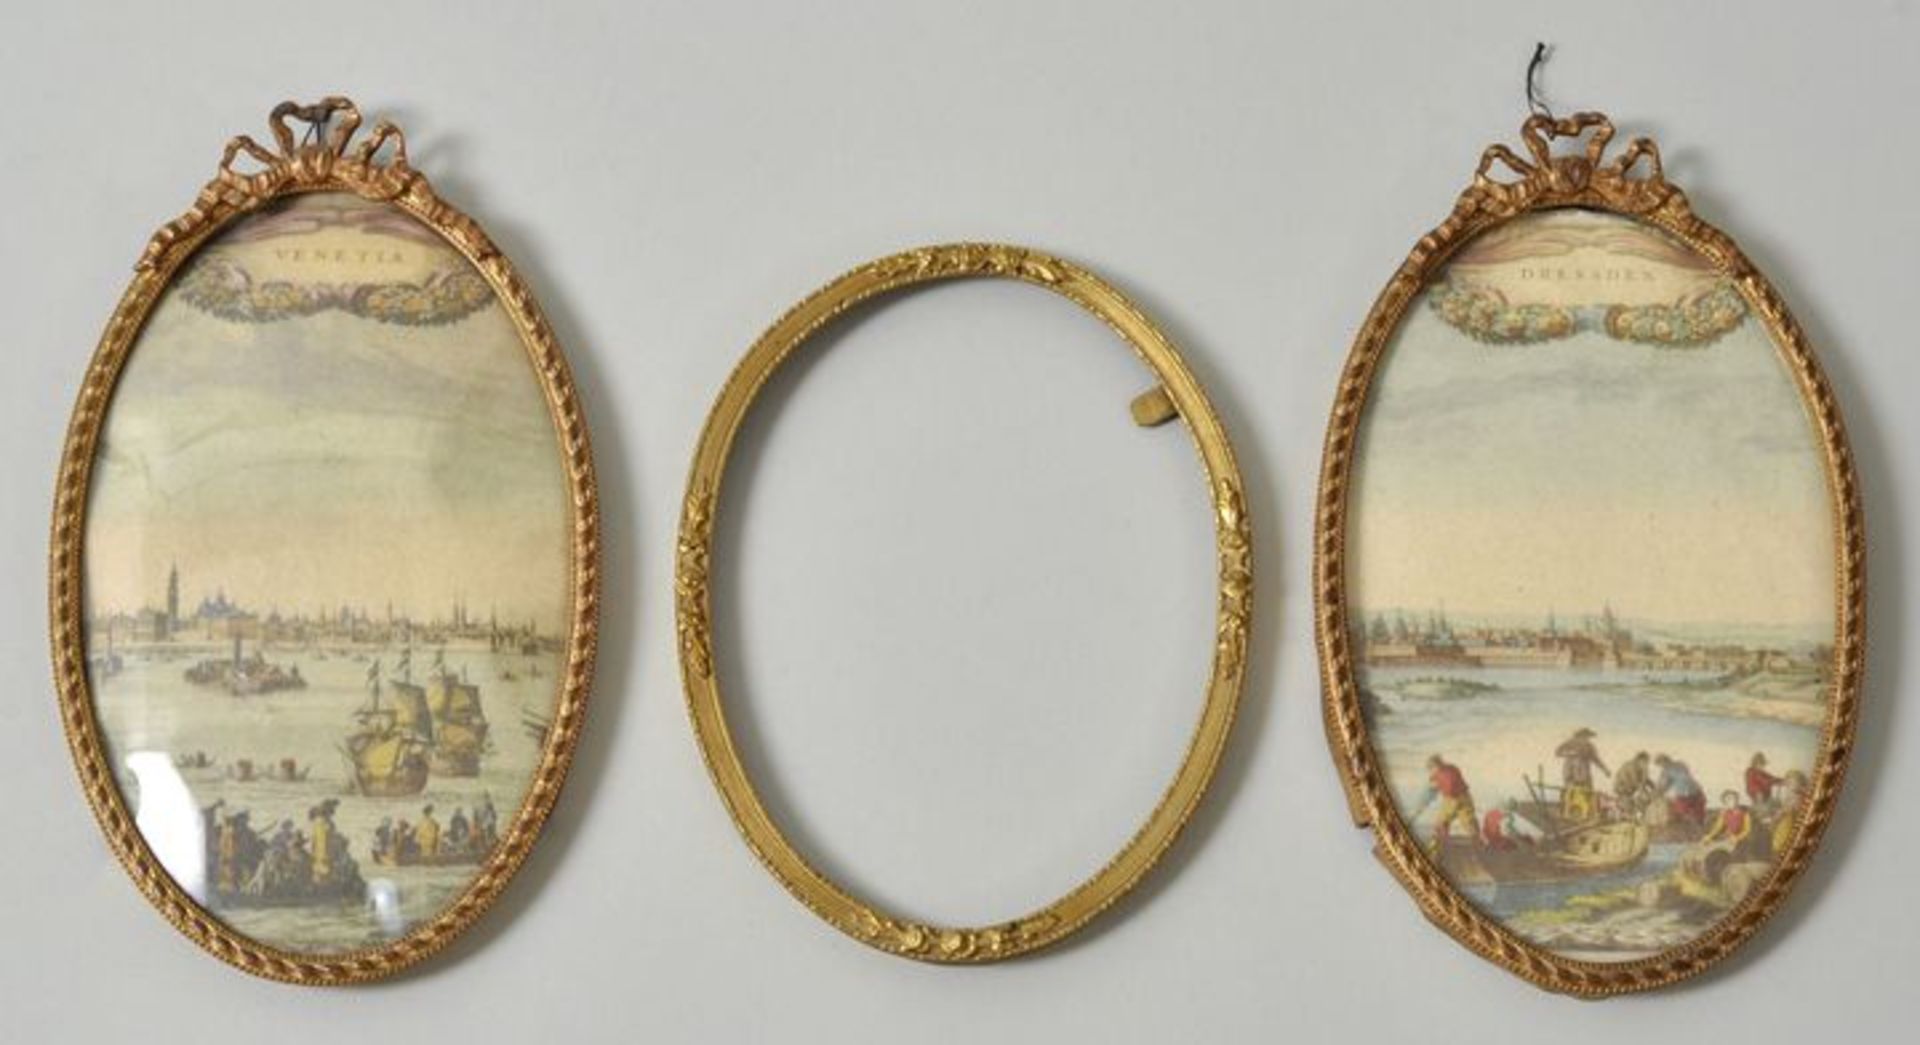 Drei Rähmchen für Miniaturen, 19. Jh.Messing, Ovalrahmen, zwei St. mit Schleifenbekrönung, verglast,